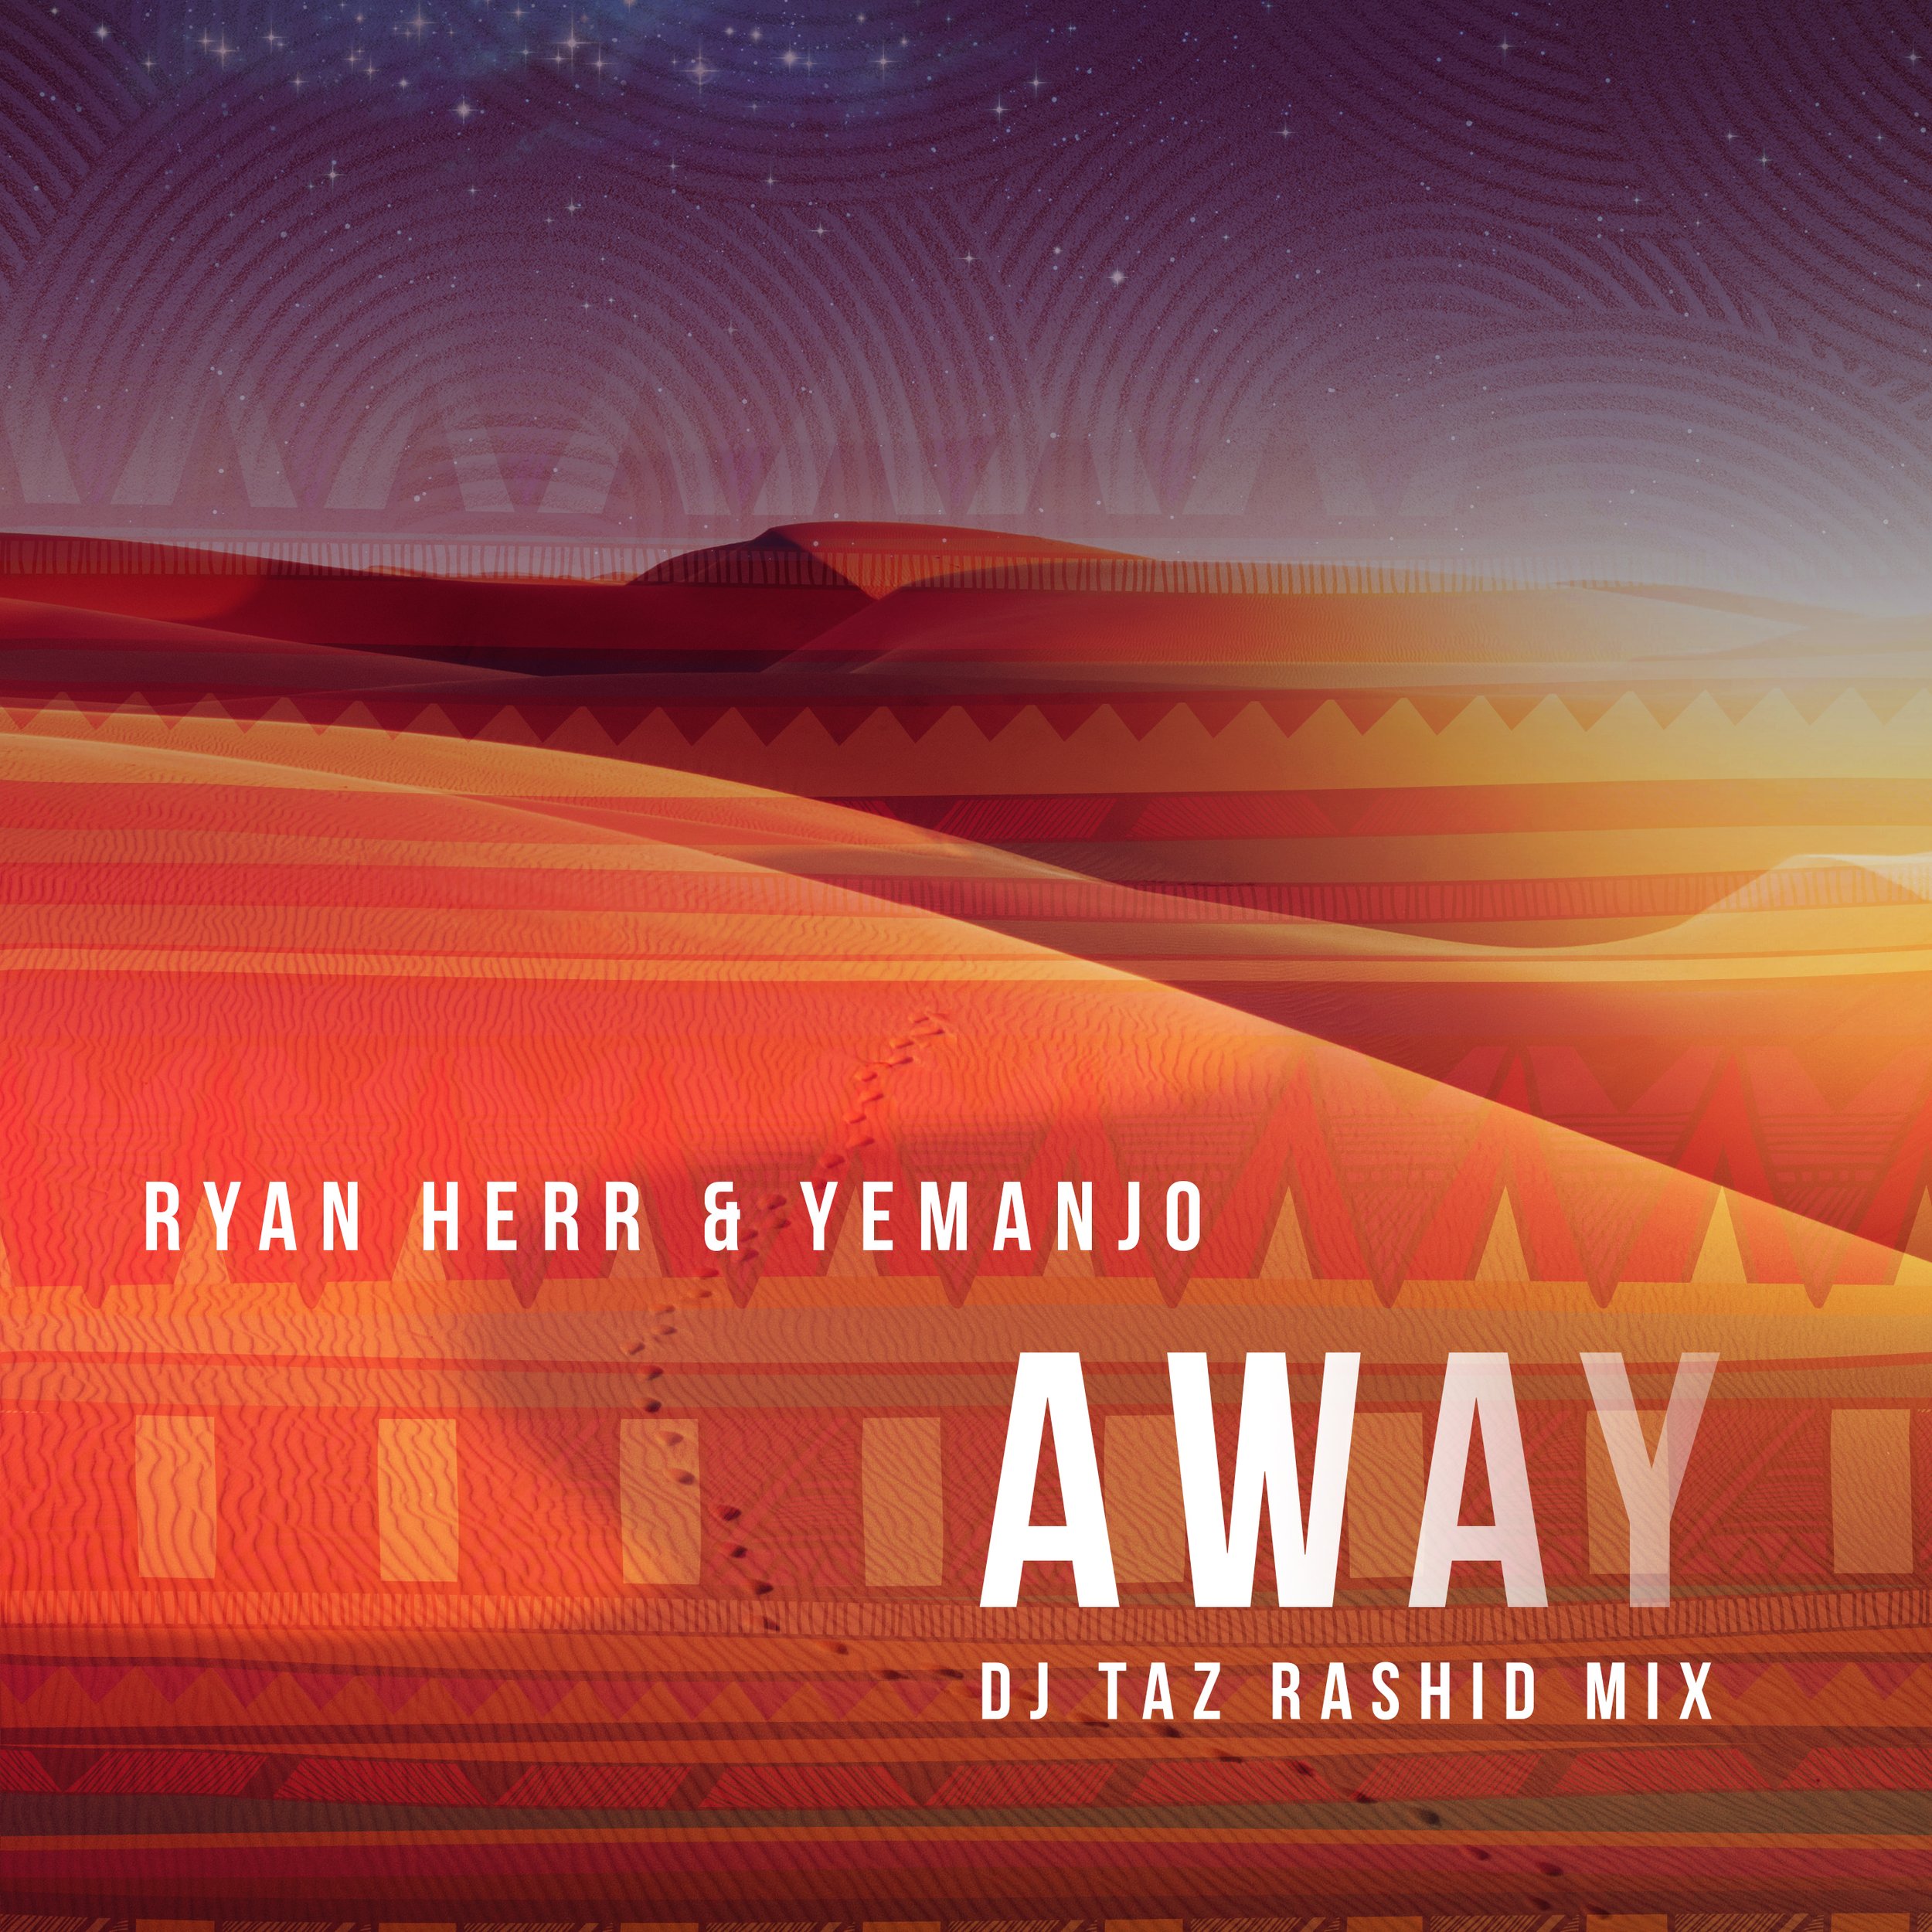 Ryan Herr & Yemanjo - Away (DJ Taz Rashid Mix).jpg